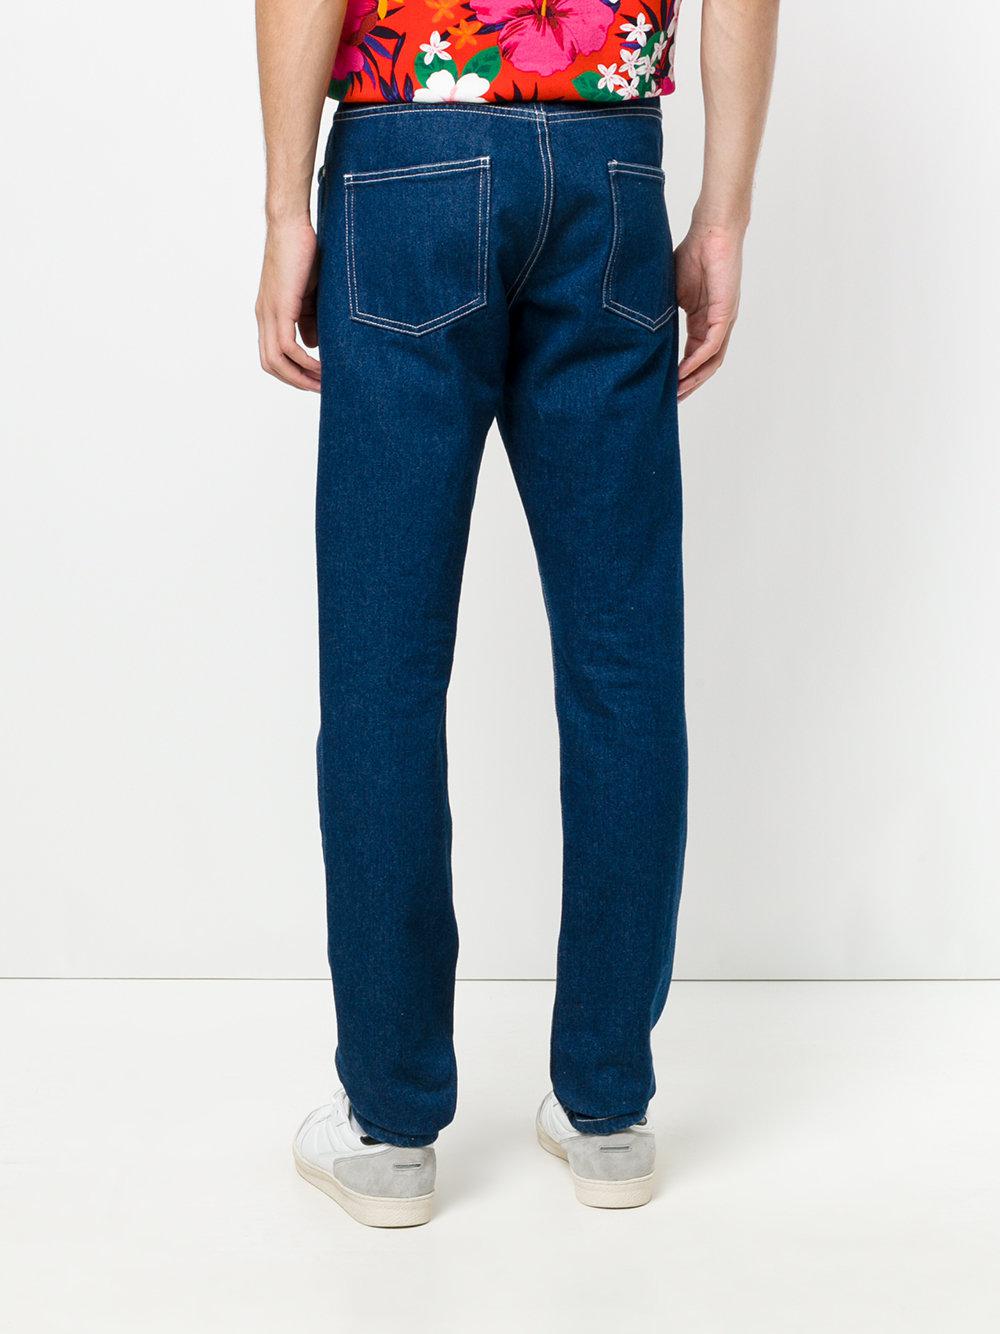 AMI Denim Straight Leg Jeans in Blue for Men - Lyst